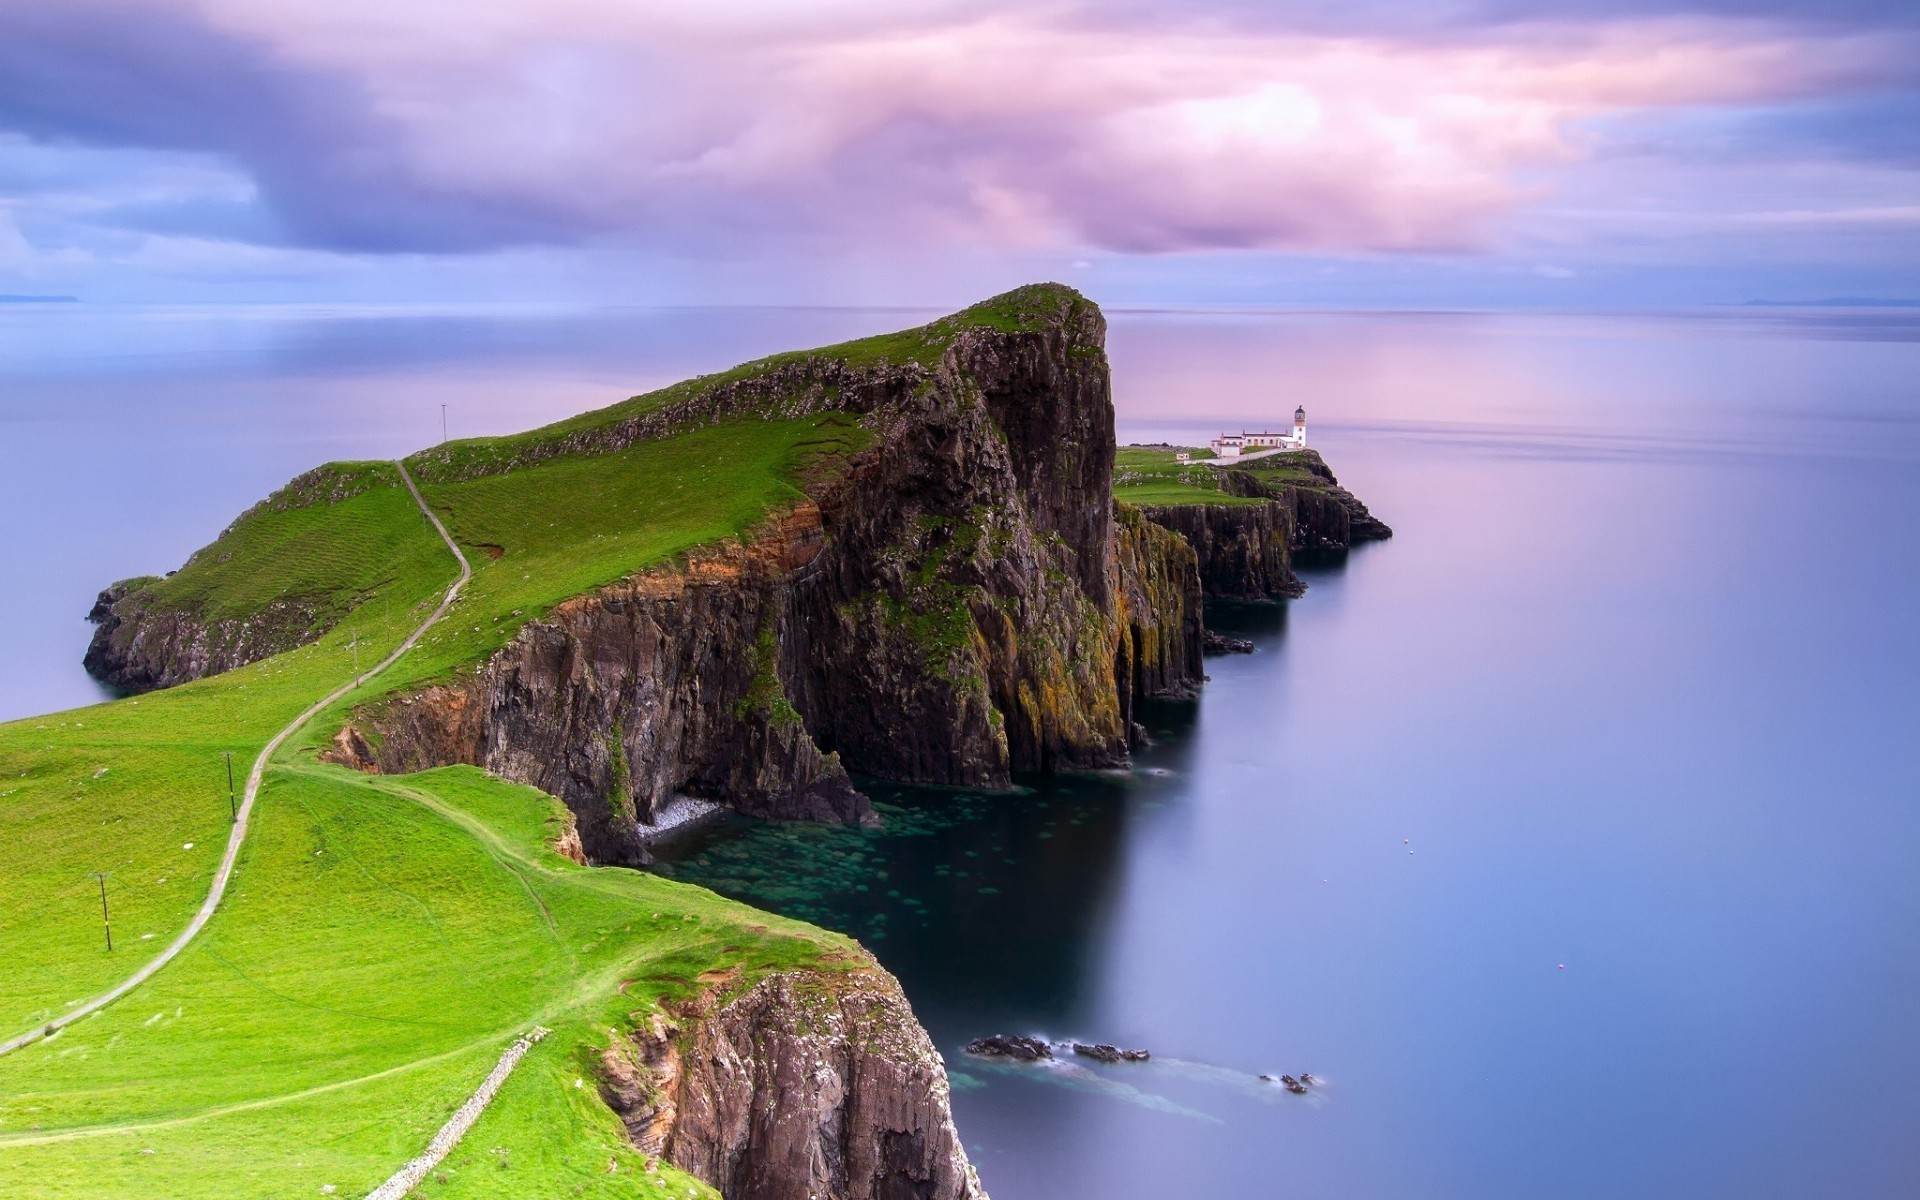 Hình nền Scotland Lighthouse Wallpaper sẽ đưa bạn đến với vườn quốc gia Cairngorms tuyệt đẹp và điểm đến nổi tiếng phía bắc của Scotland. Hãy khám phá tiếng sóng vỗ, những ngọn đèn pha lê lấp lánh và tận hưởng trọn vẹn vẻ đẹp của nơi đây.